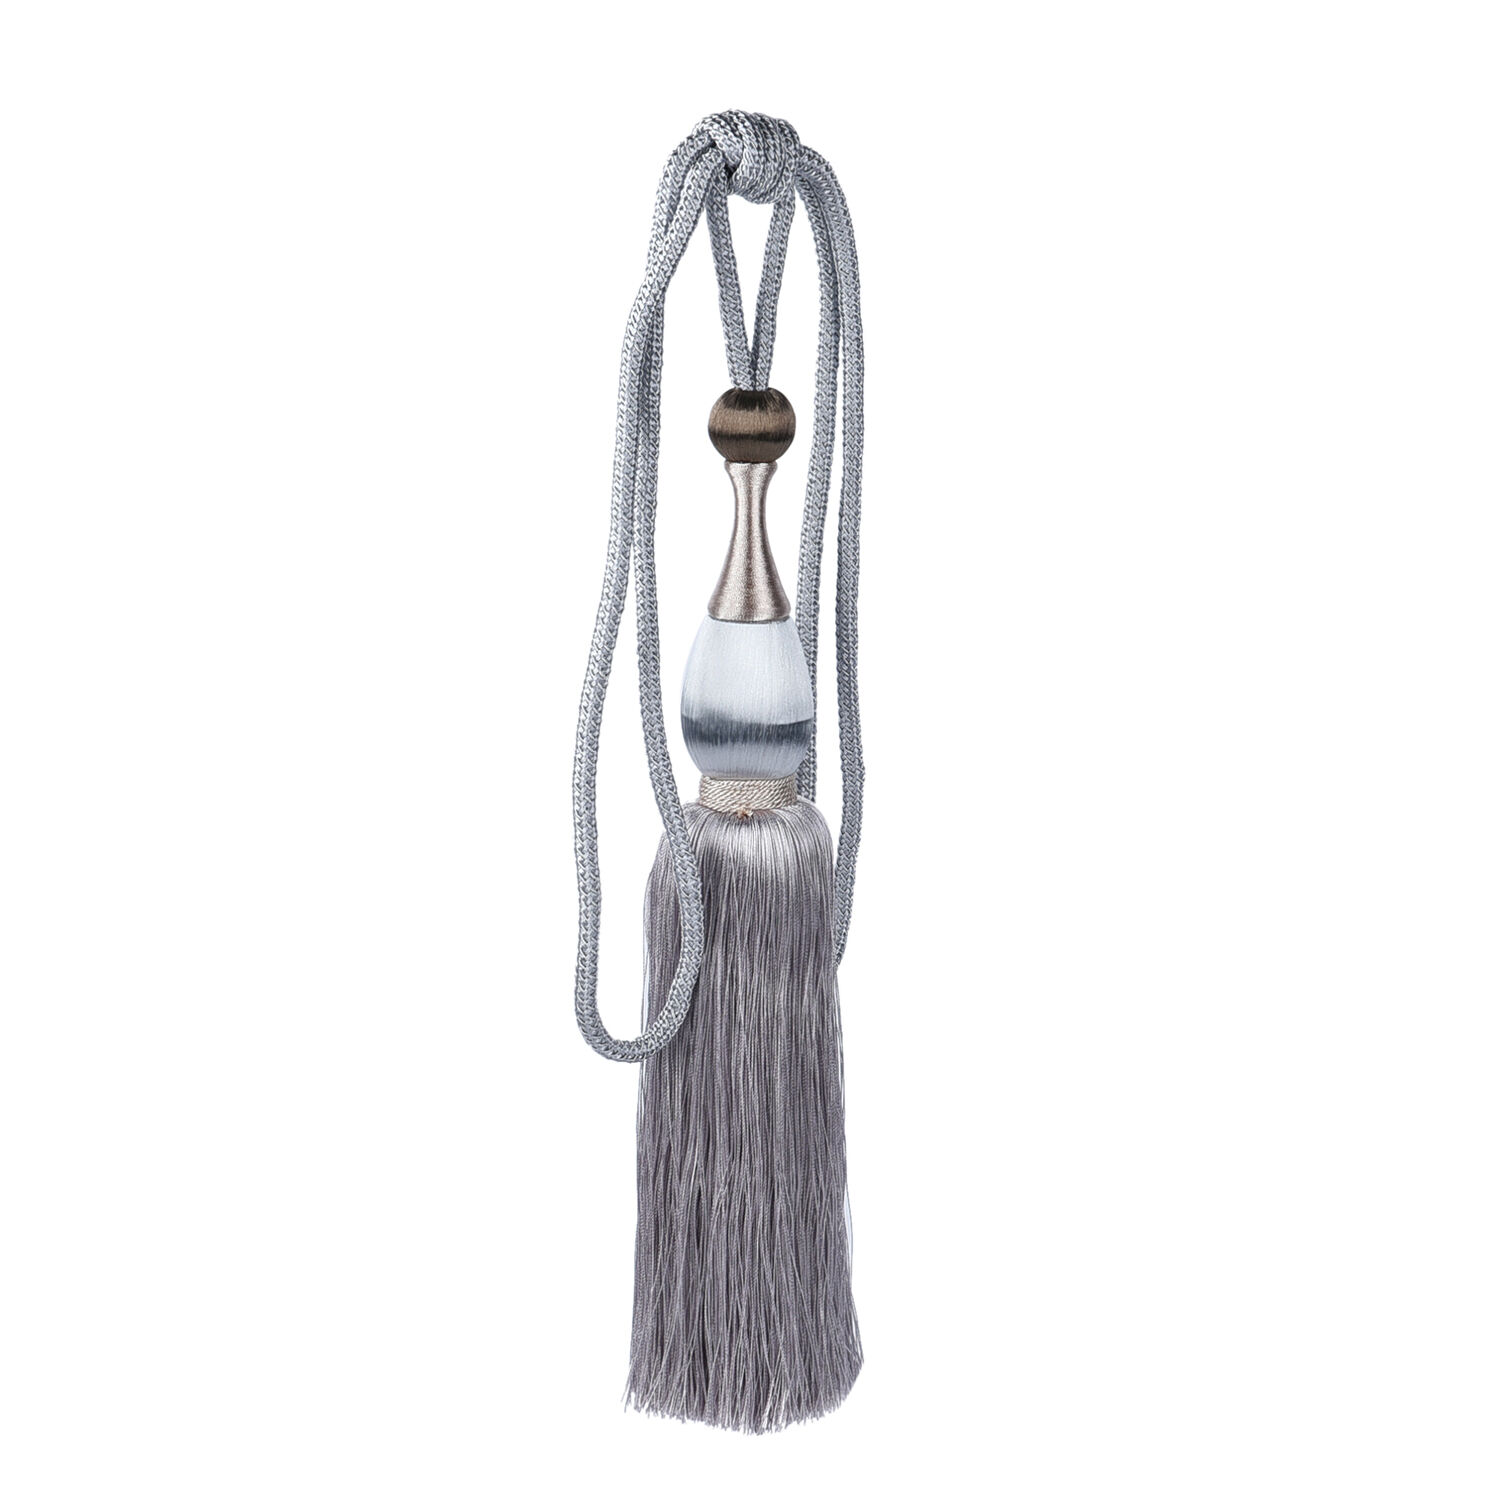 N658 Kunst Es Details about   Silber Seidig mit Quasten Vorhang Raffhalter X2 